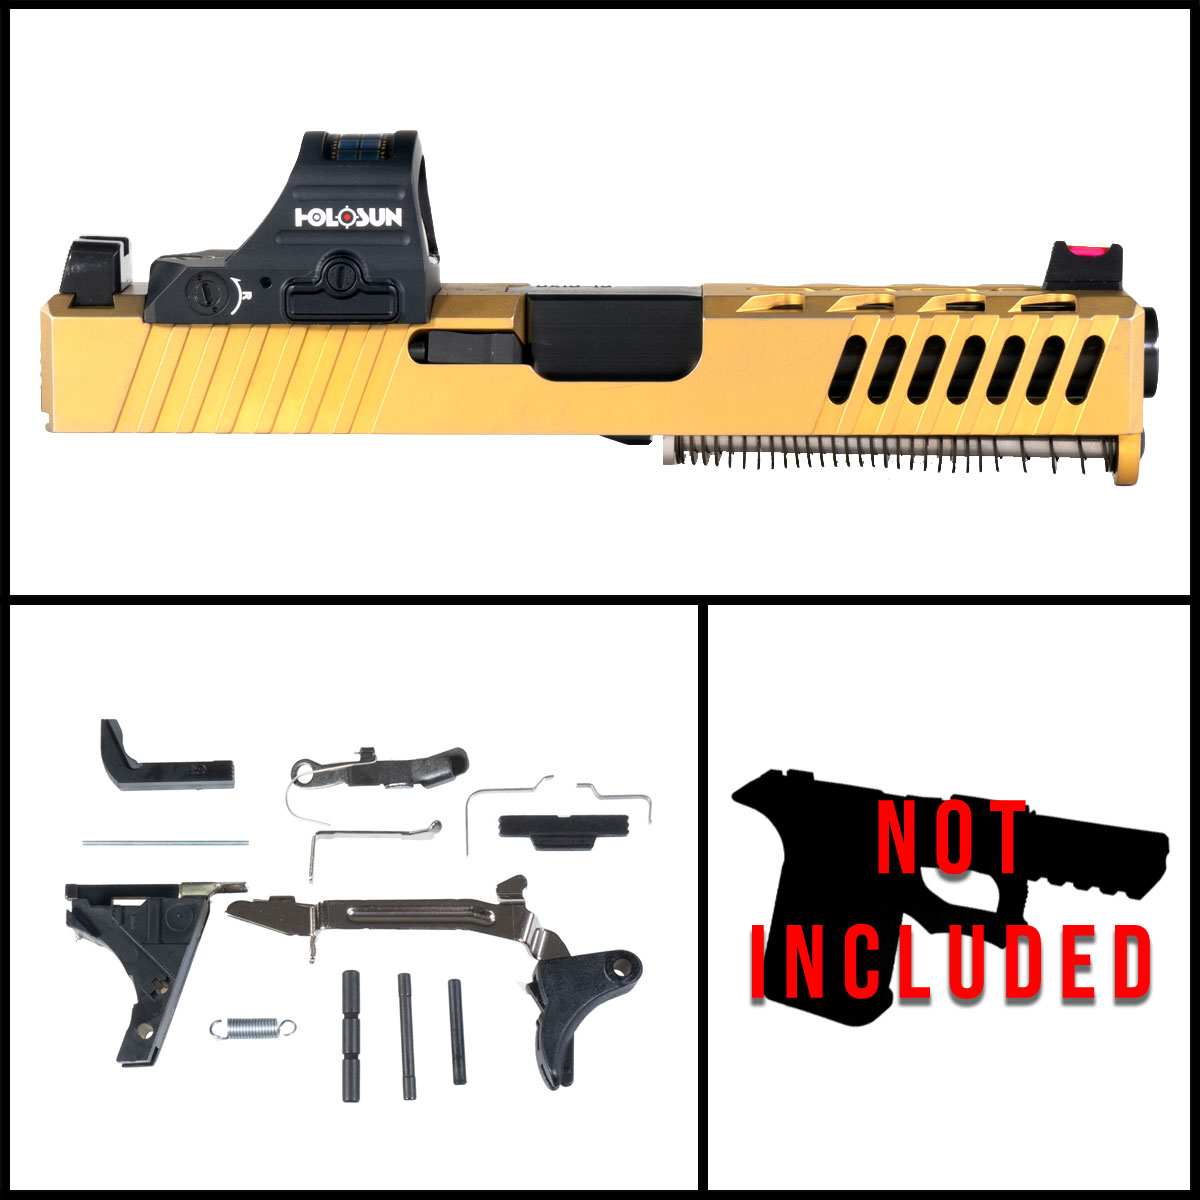 DTT 'Aurum' 9mm Full Pistol Build Kit (Everything Minus Frame) - Glock 19 Compatible